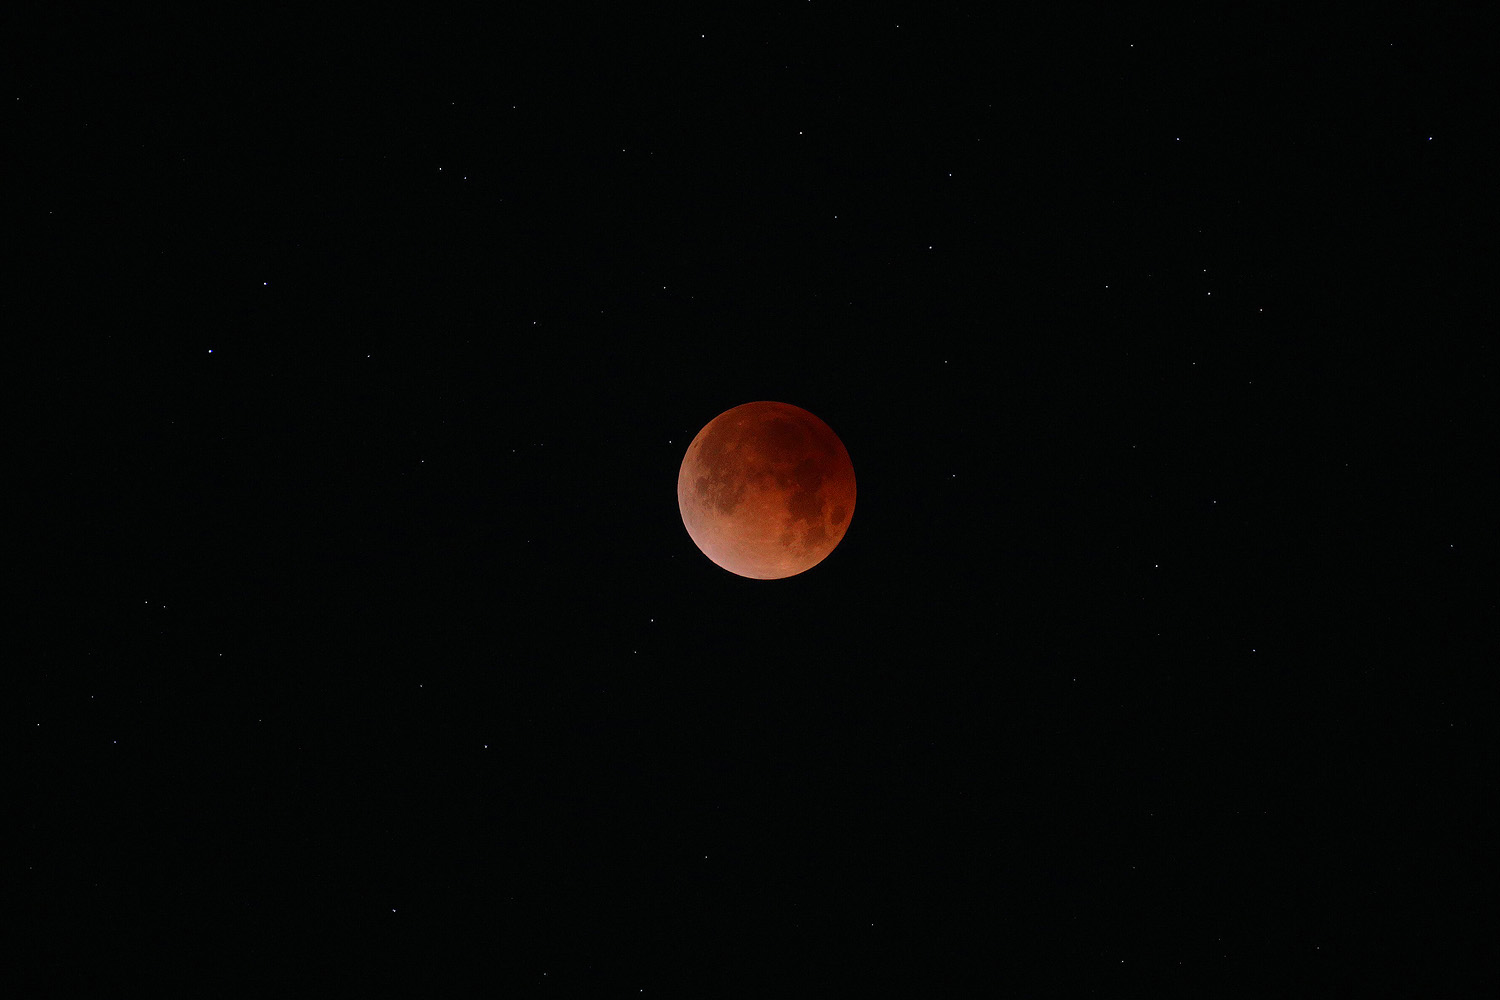 bill-hocker-lunar-eclipse-berkeley-california-5:30am-pst-jan-31st-2018